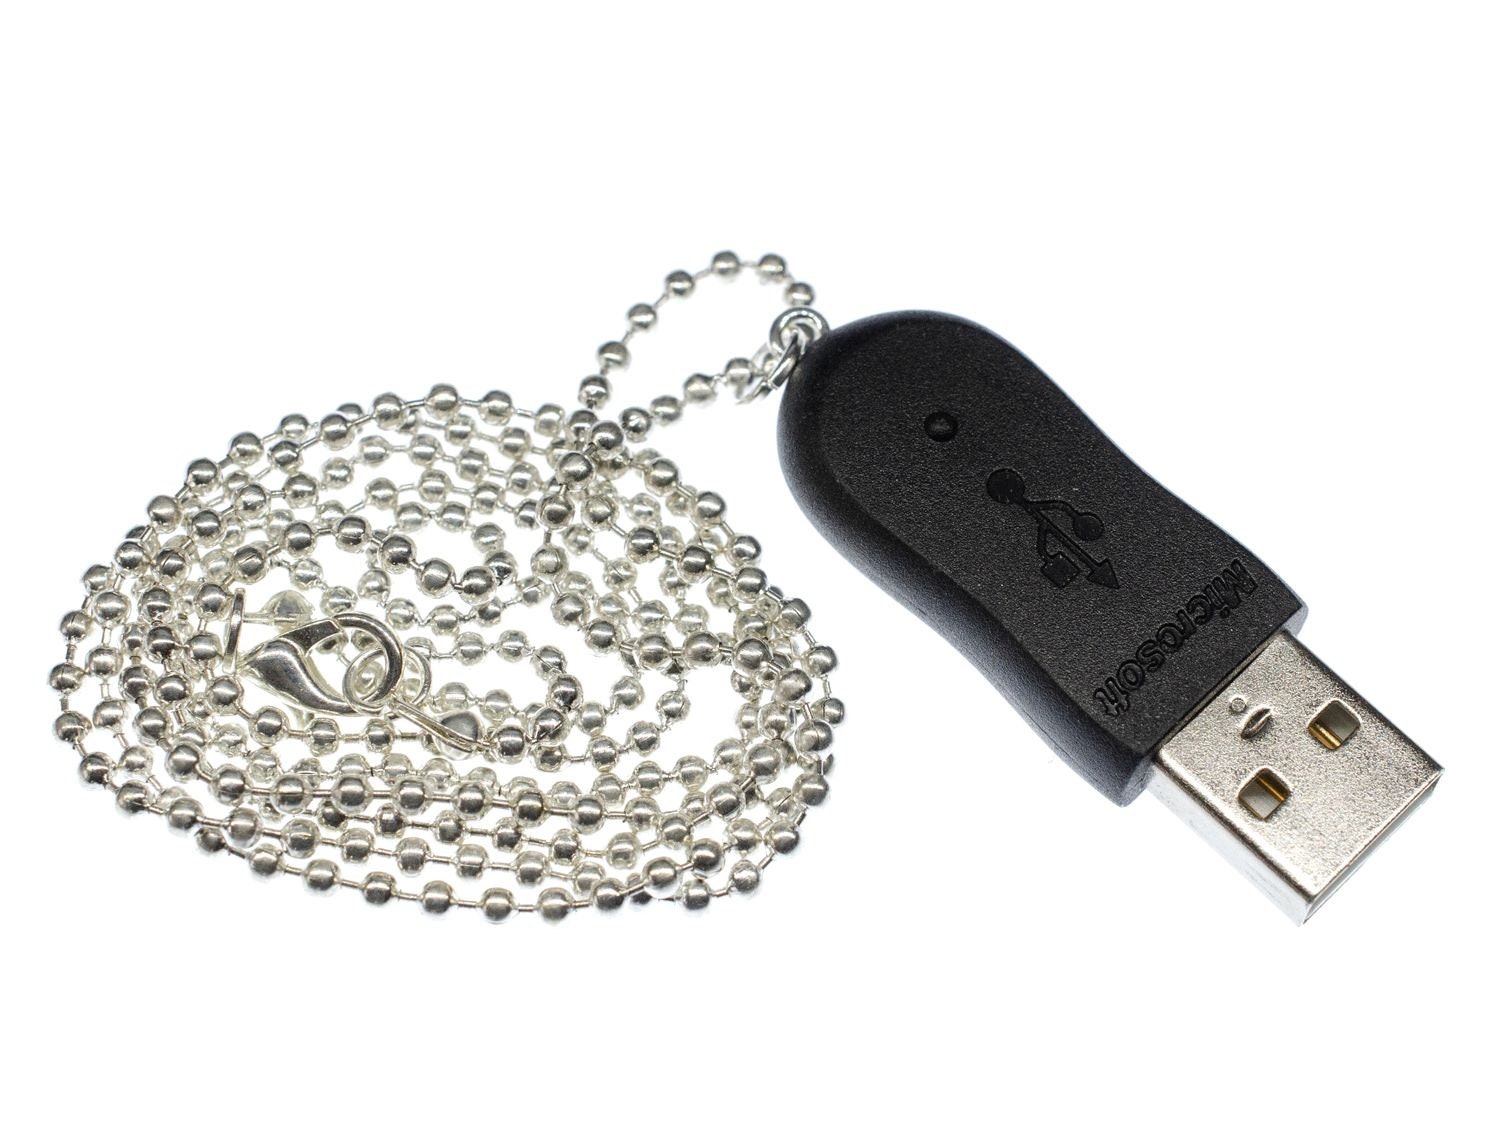 Clé USB 16 Go - Les Nabis - Objets insolites, gadgets, bijoux